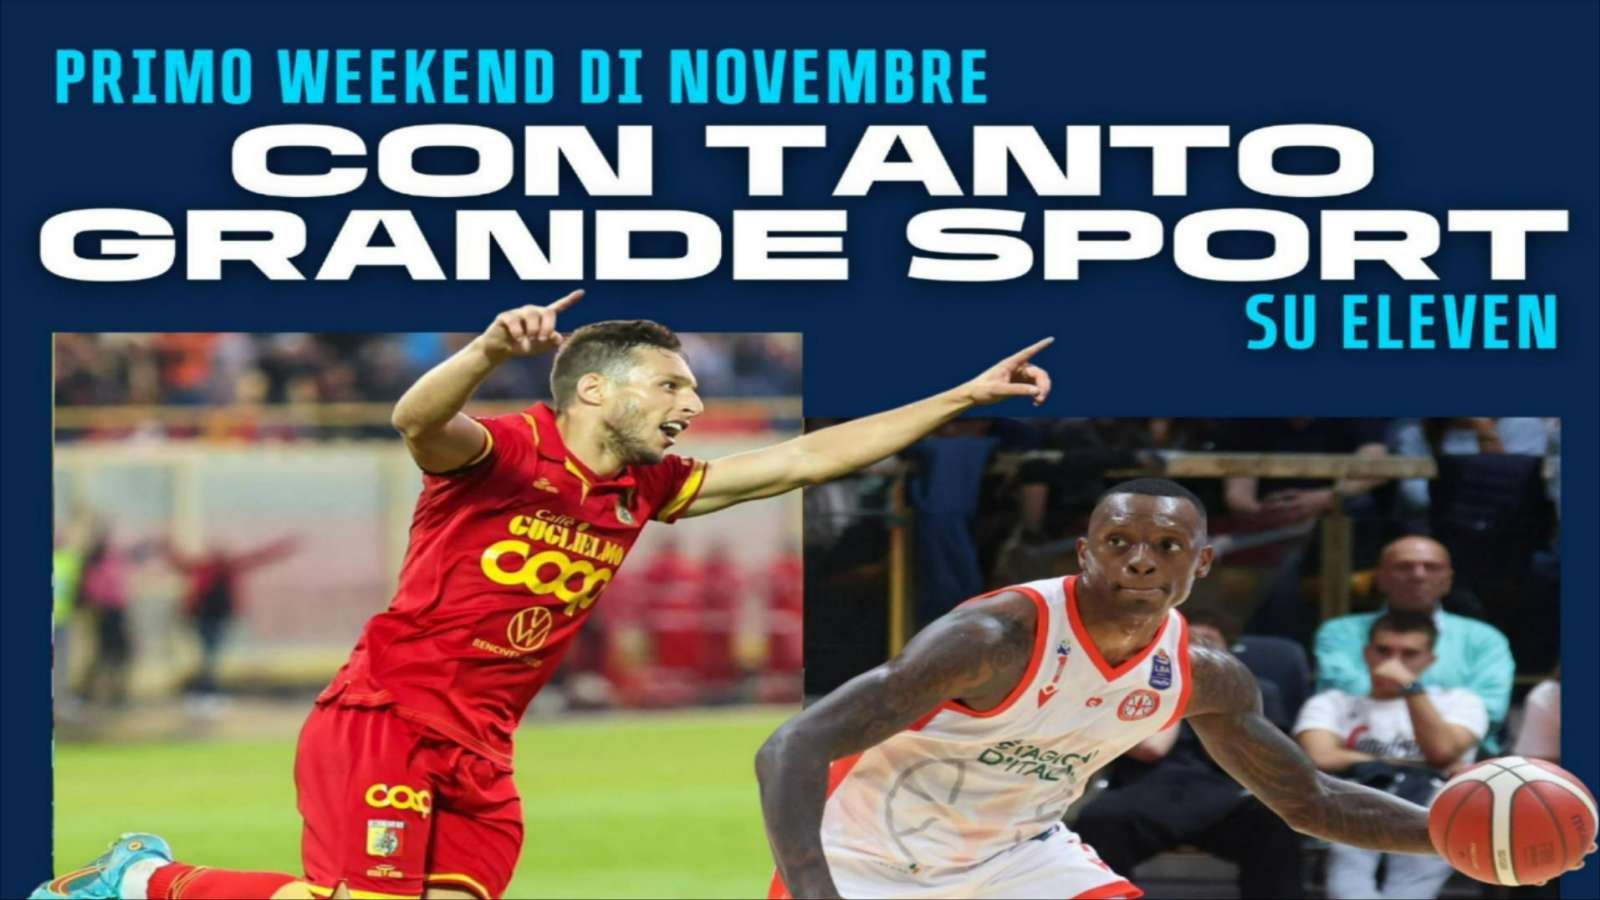 Eleven Sports - Telecronisti Serie C 12a Giornata, Basket Serie A 6a Giornata + altri eventi